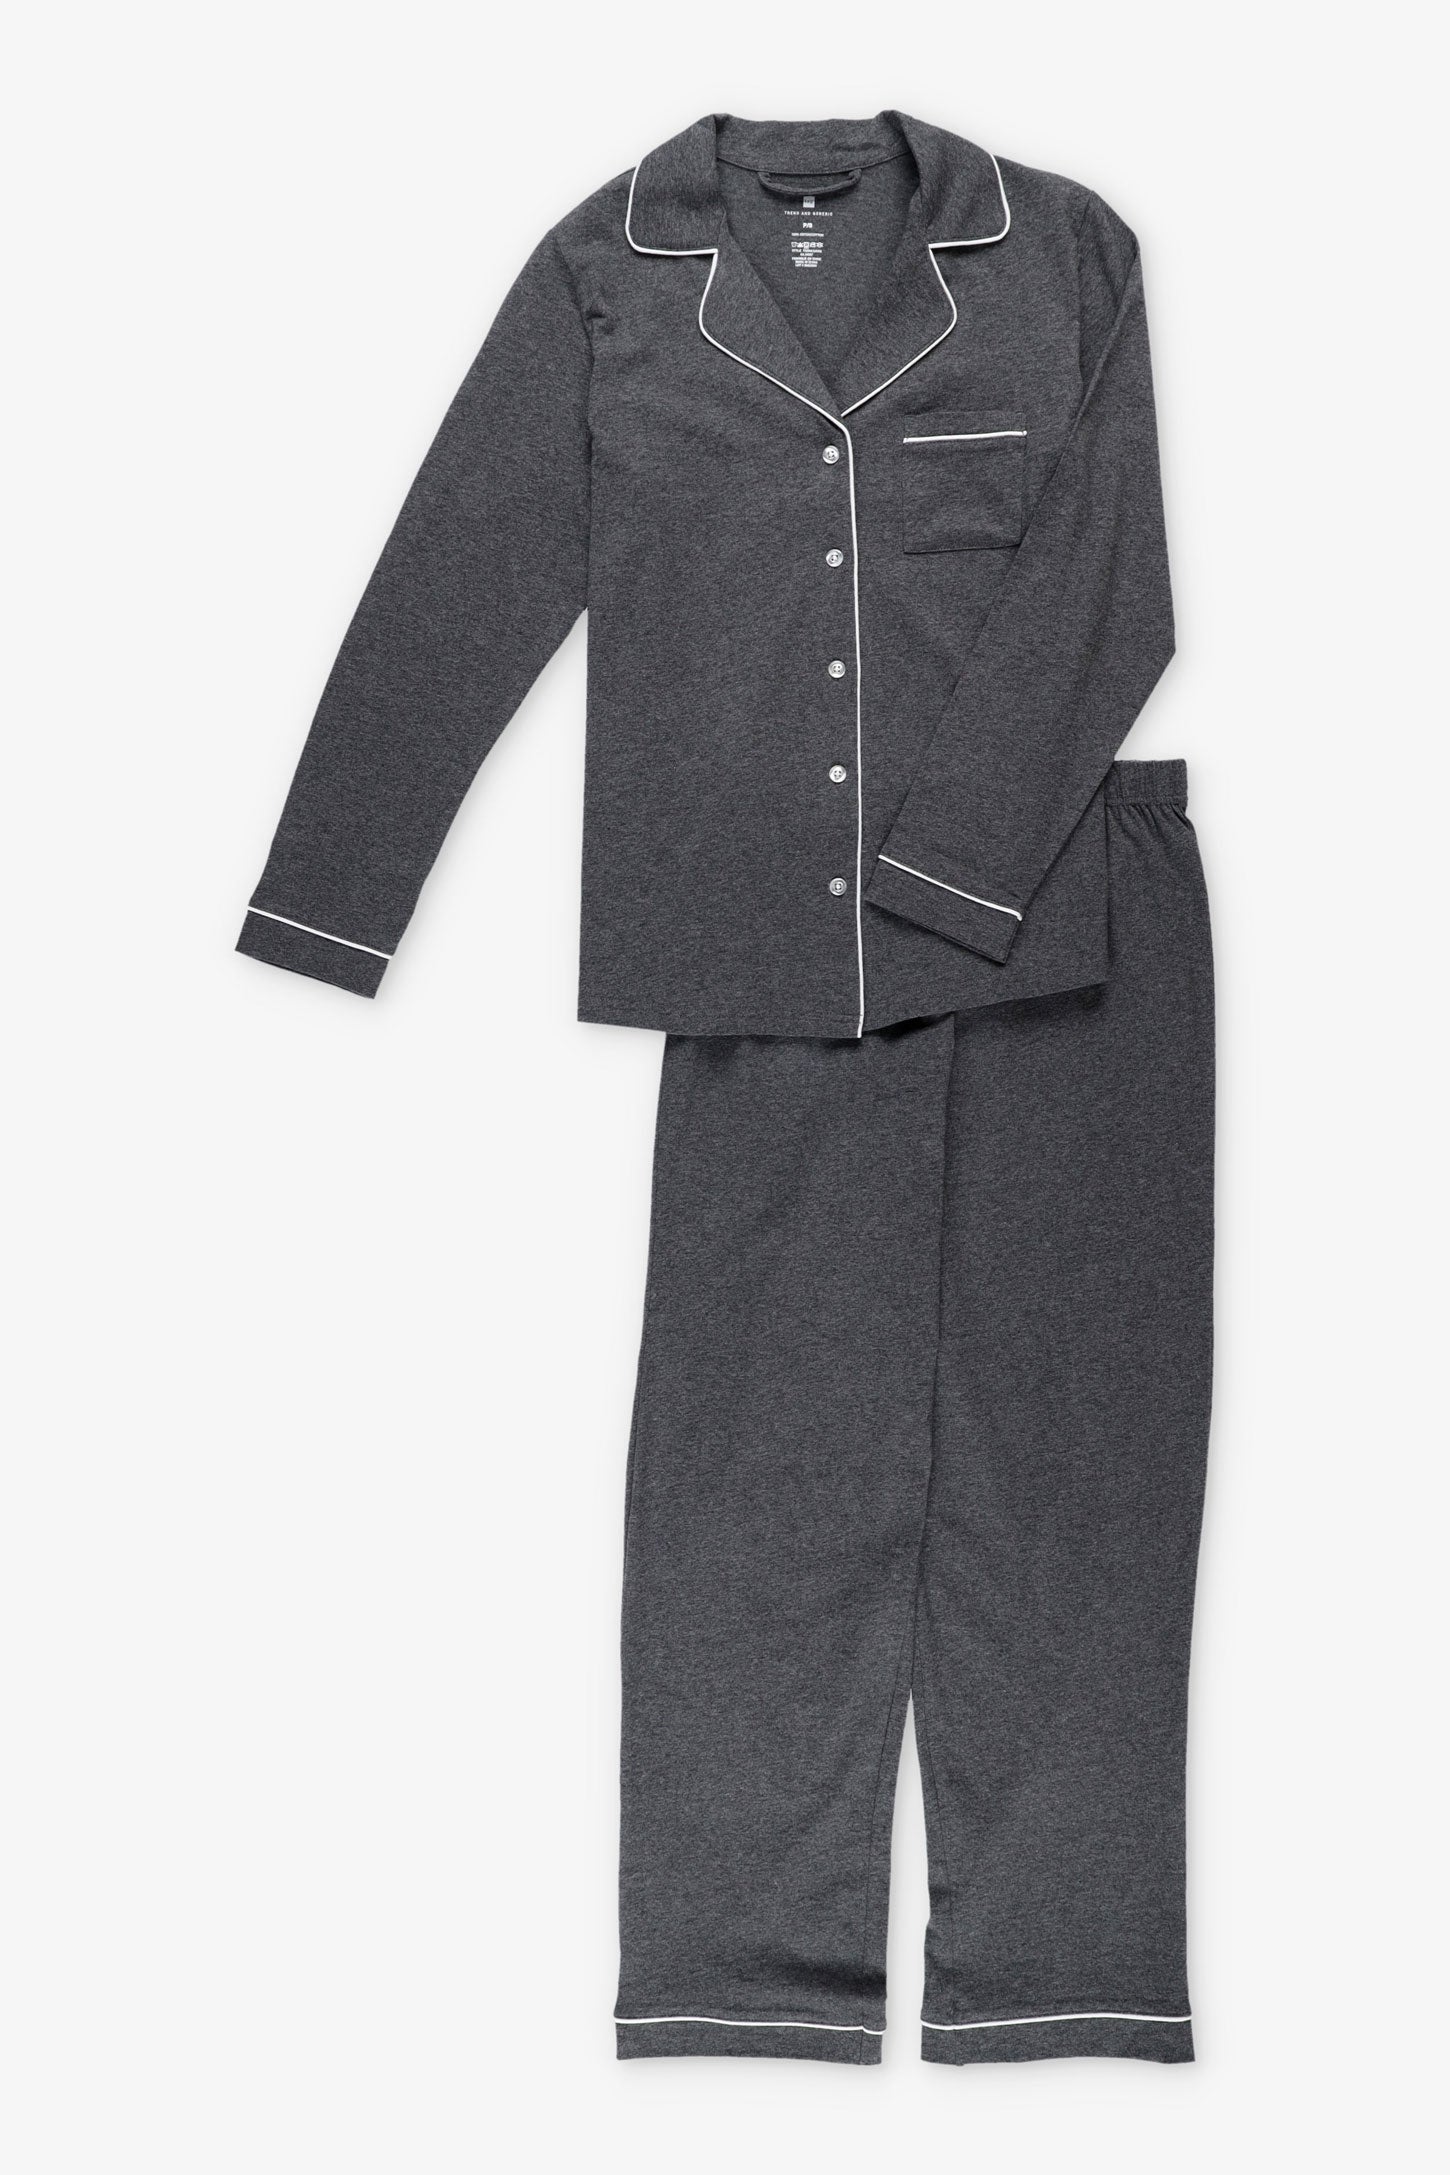 Pyjama 2-pièces chemise et pantalon coton - Femme && CHARBON MIXTE